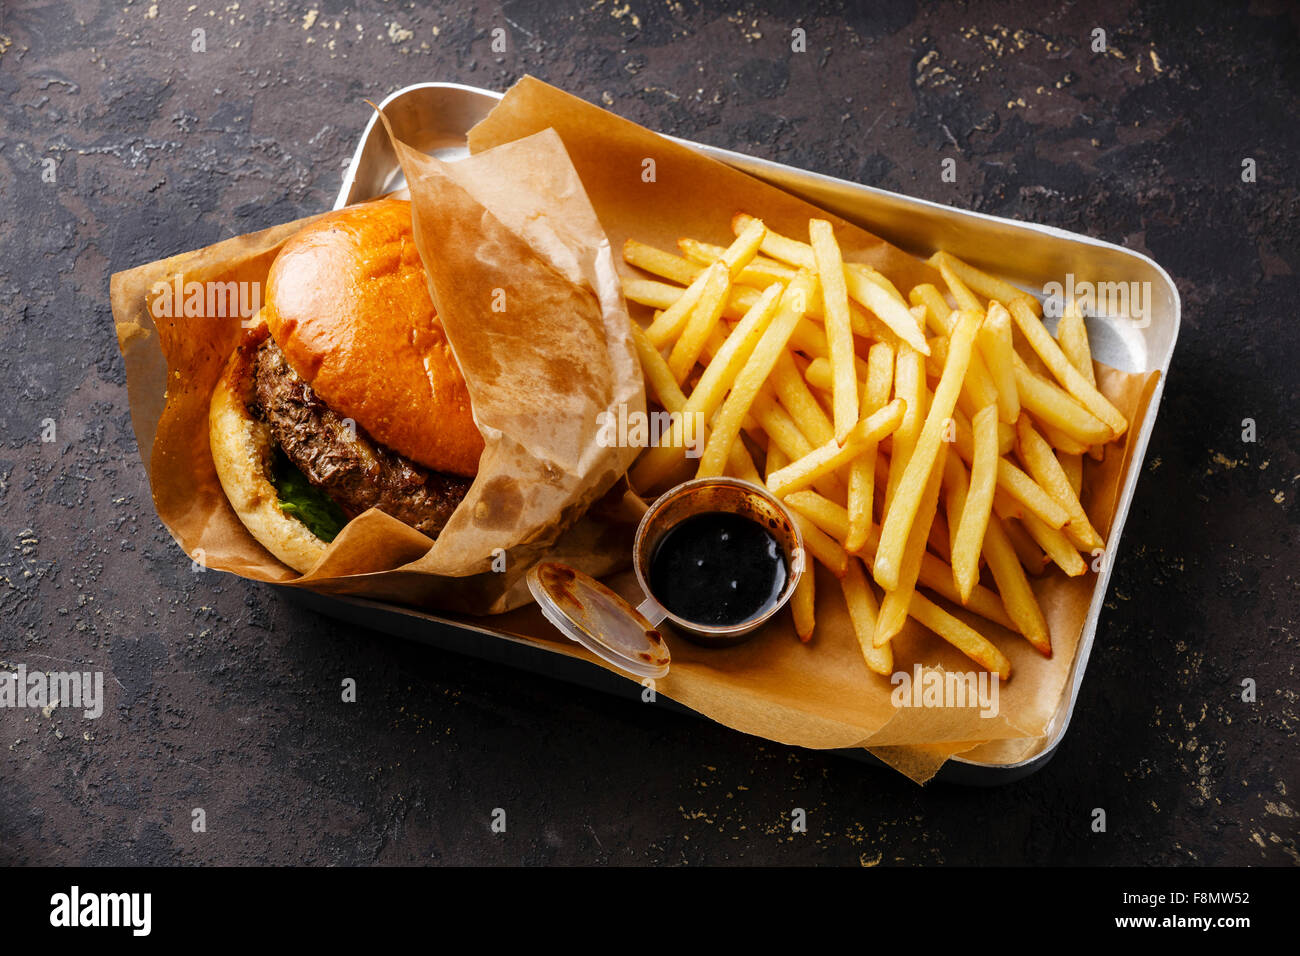 Burger con carne e patate fritte nel vassoio di alluminio su sfondo scuro Foto Stock